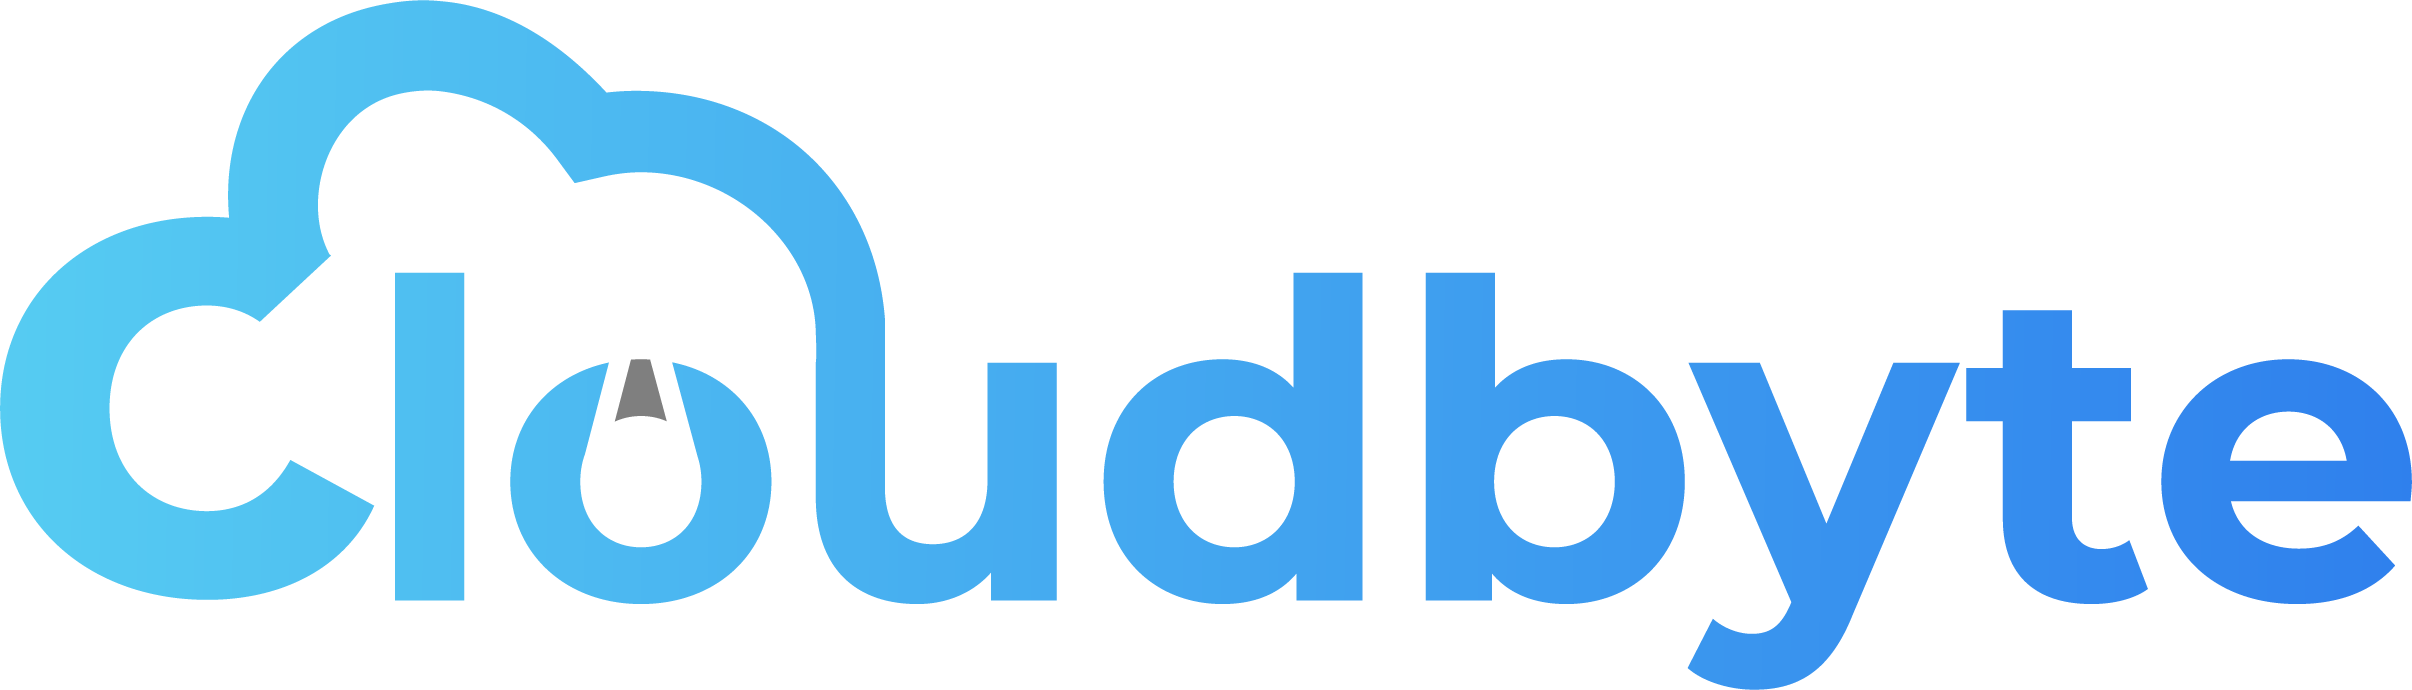 cloudbyte Logo